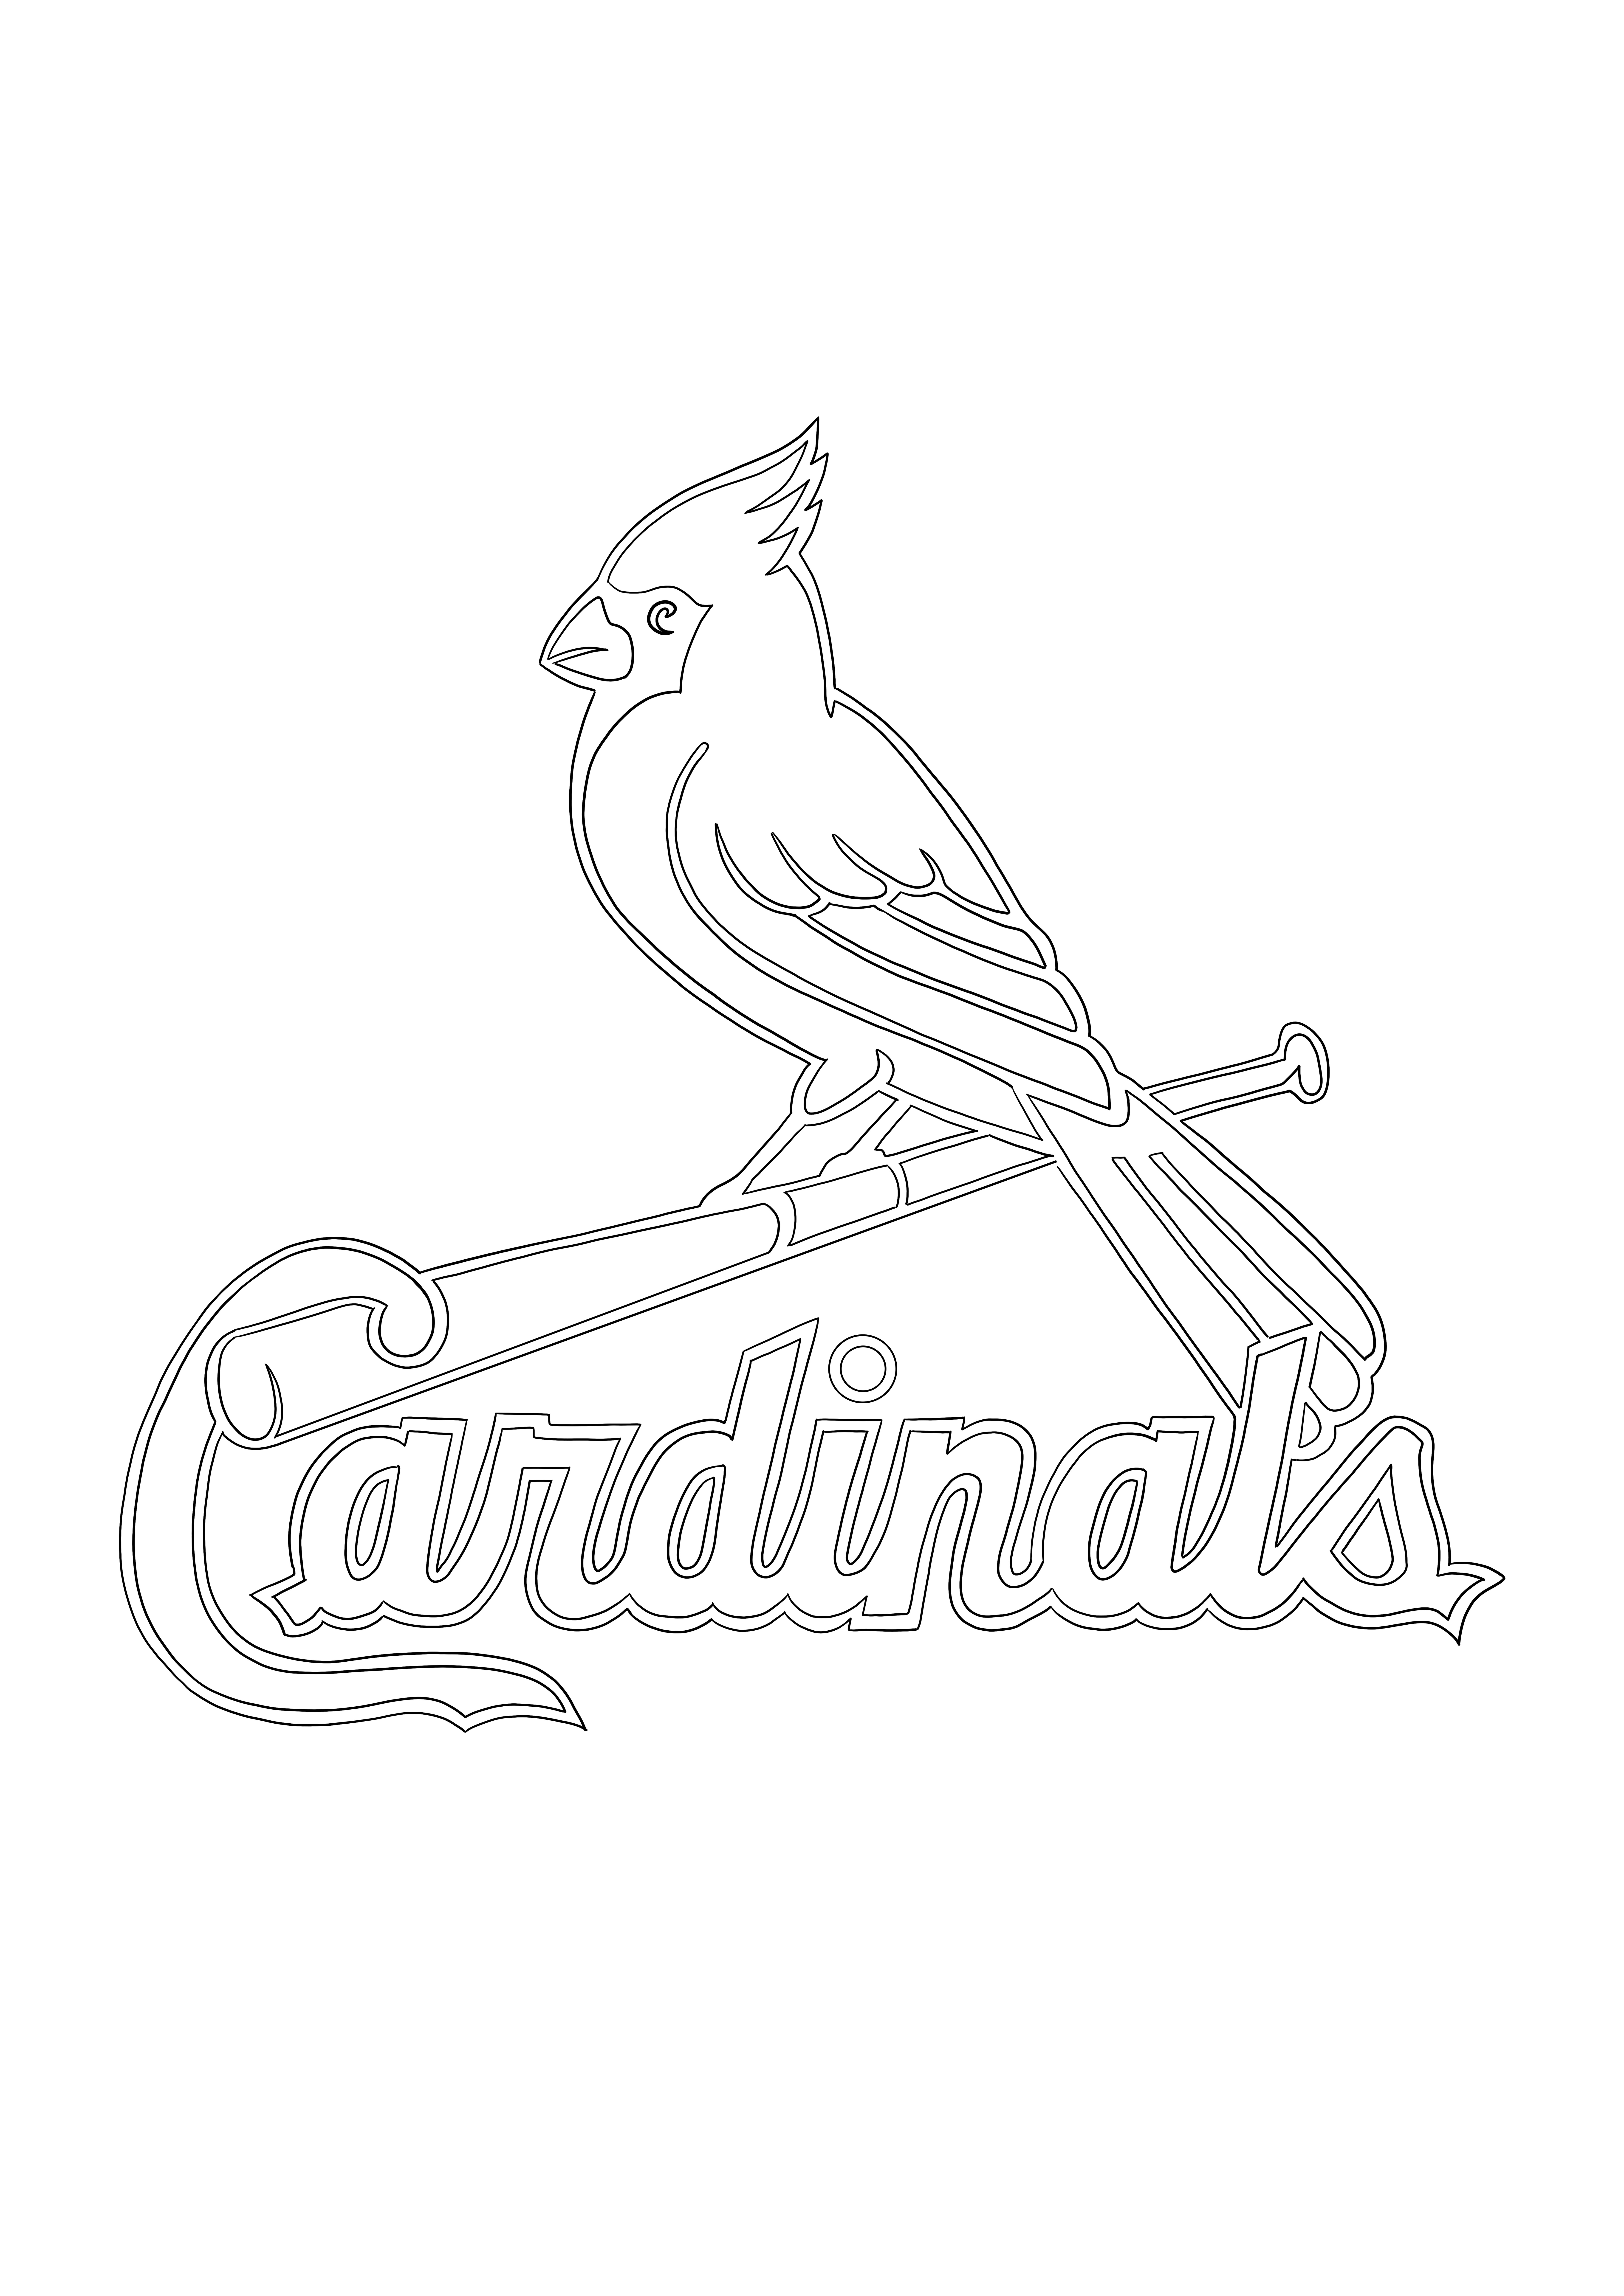 Logo St. Louis Cardinals à enregistrer pour plus tard ou à télécharger pour colorier